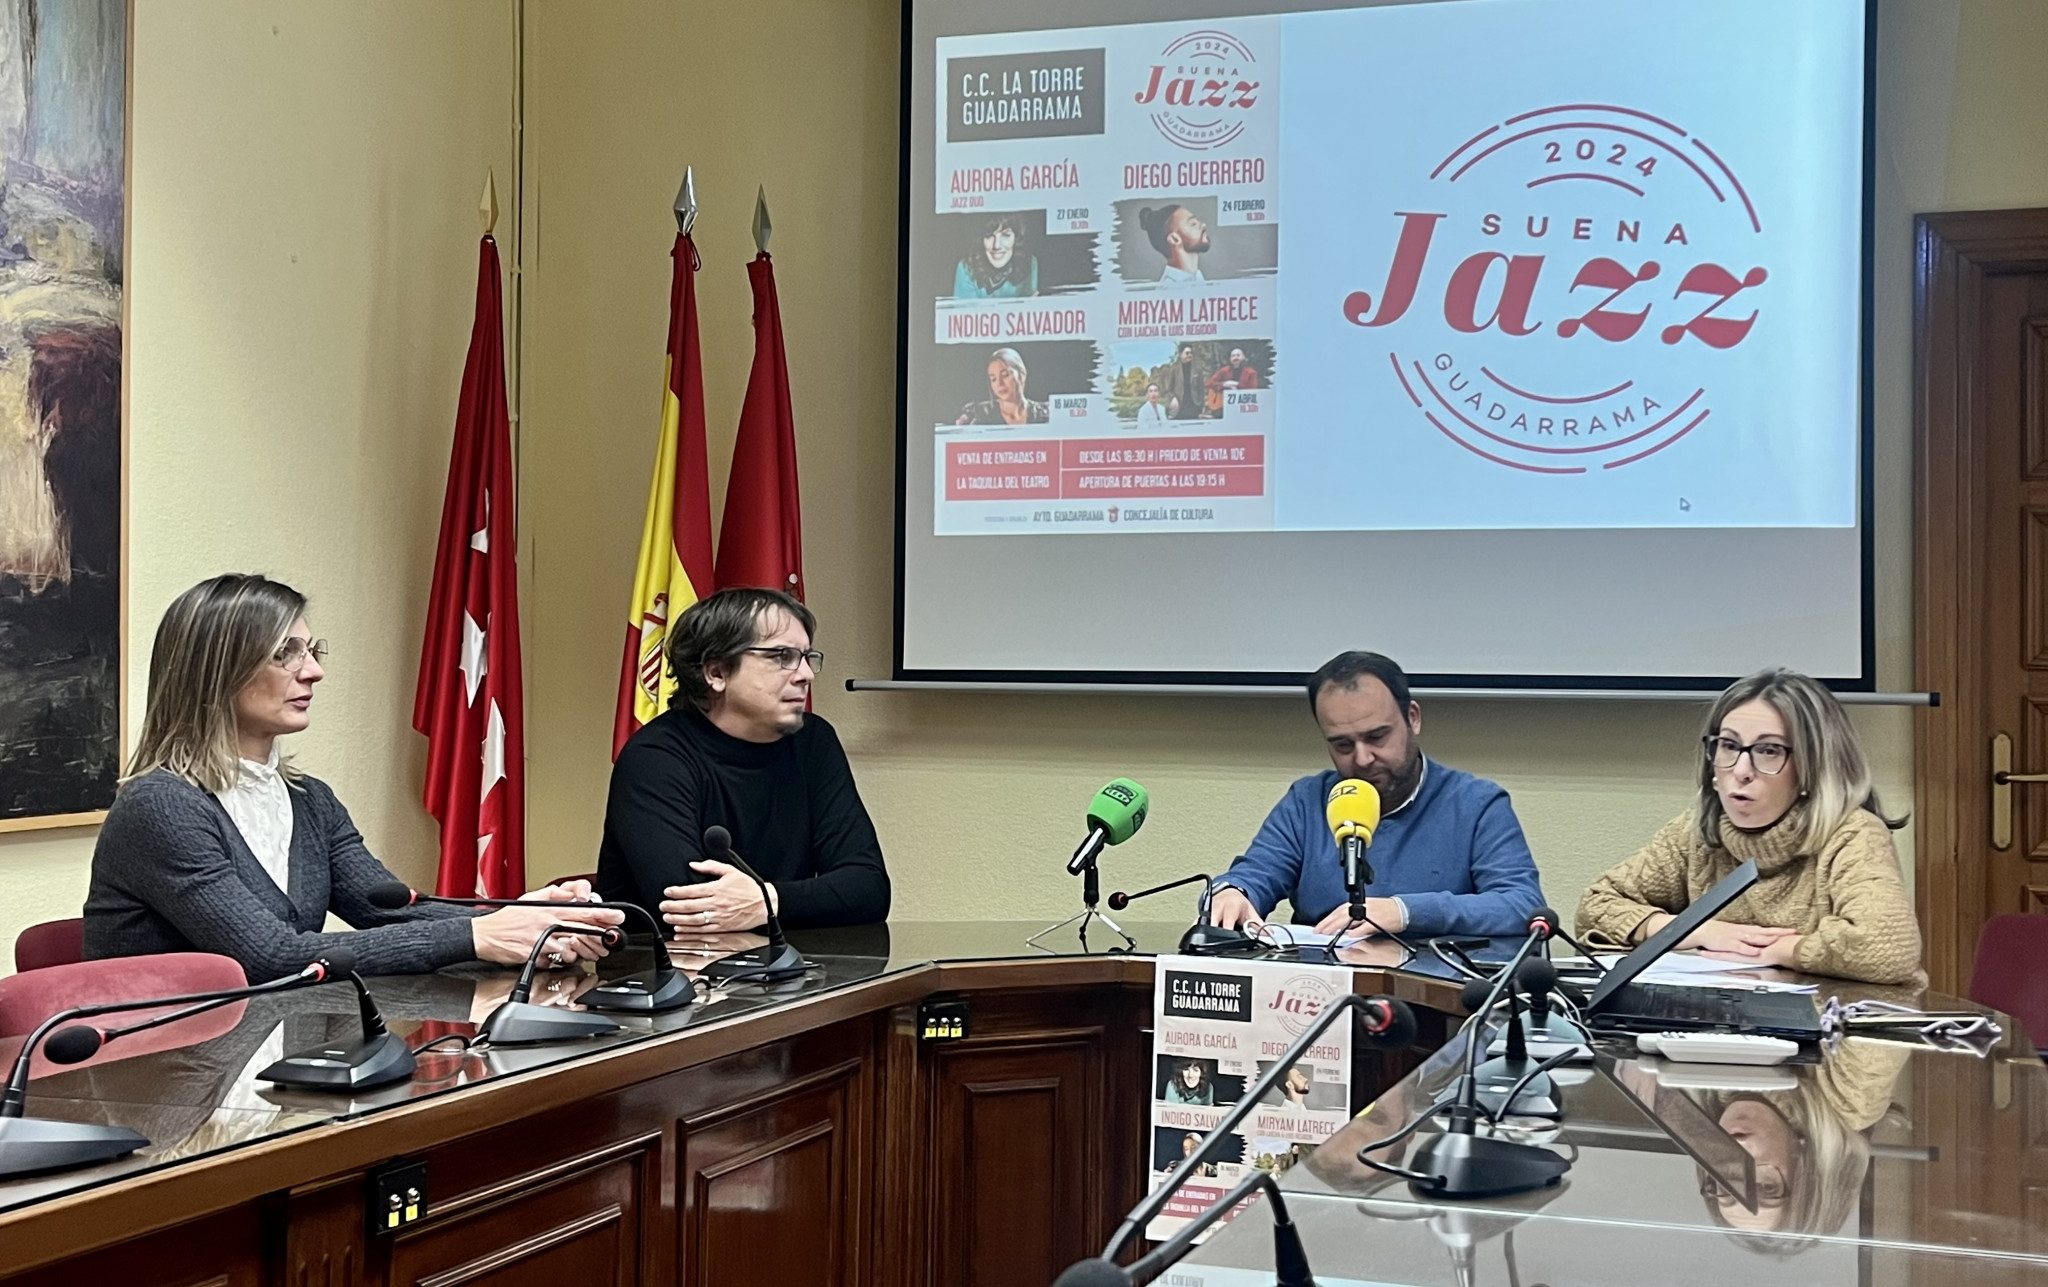 Presentación del ciclo "Suena Jazz" en el Ayuntamiento de Guadarrama